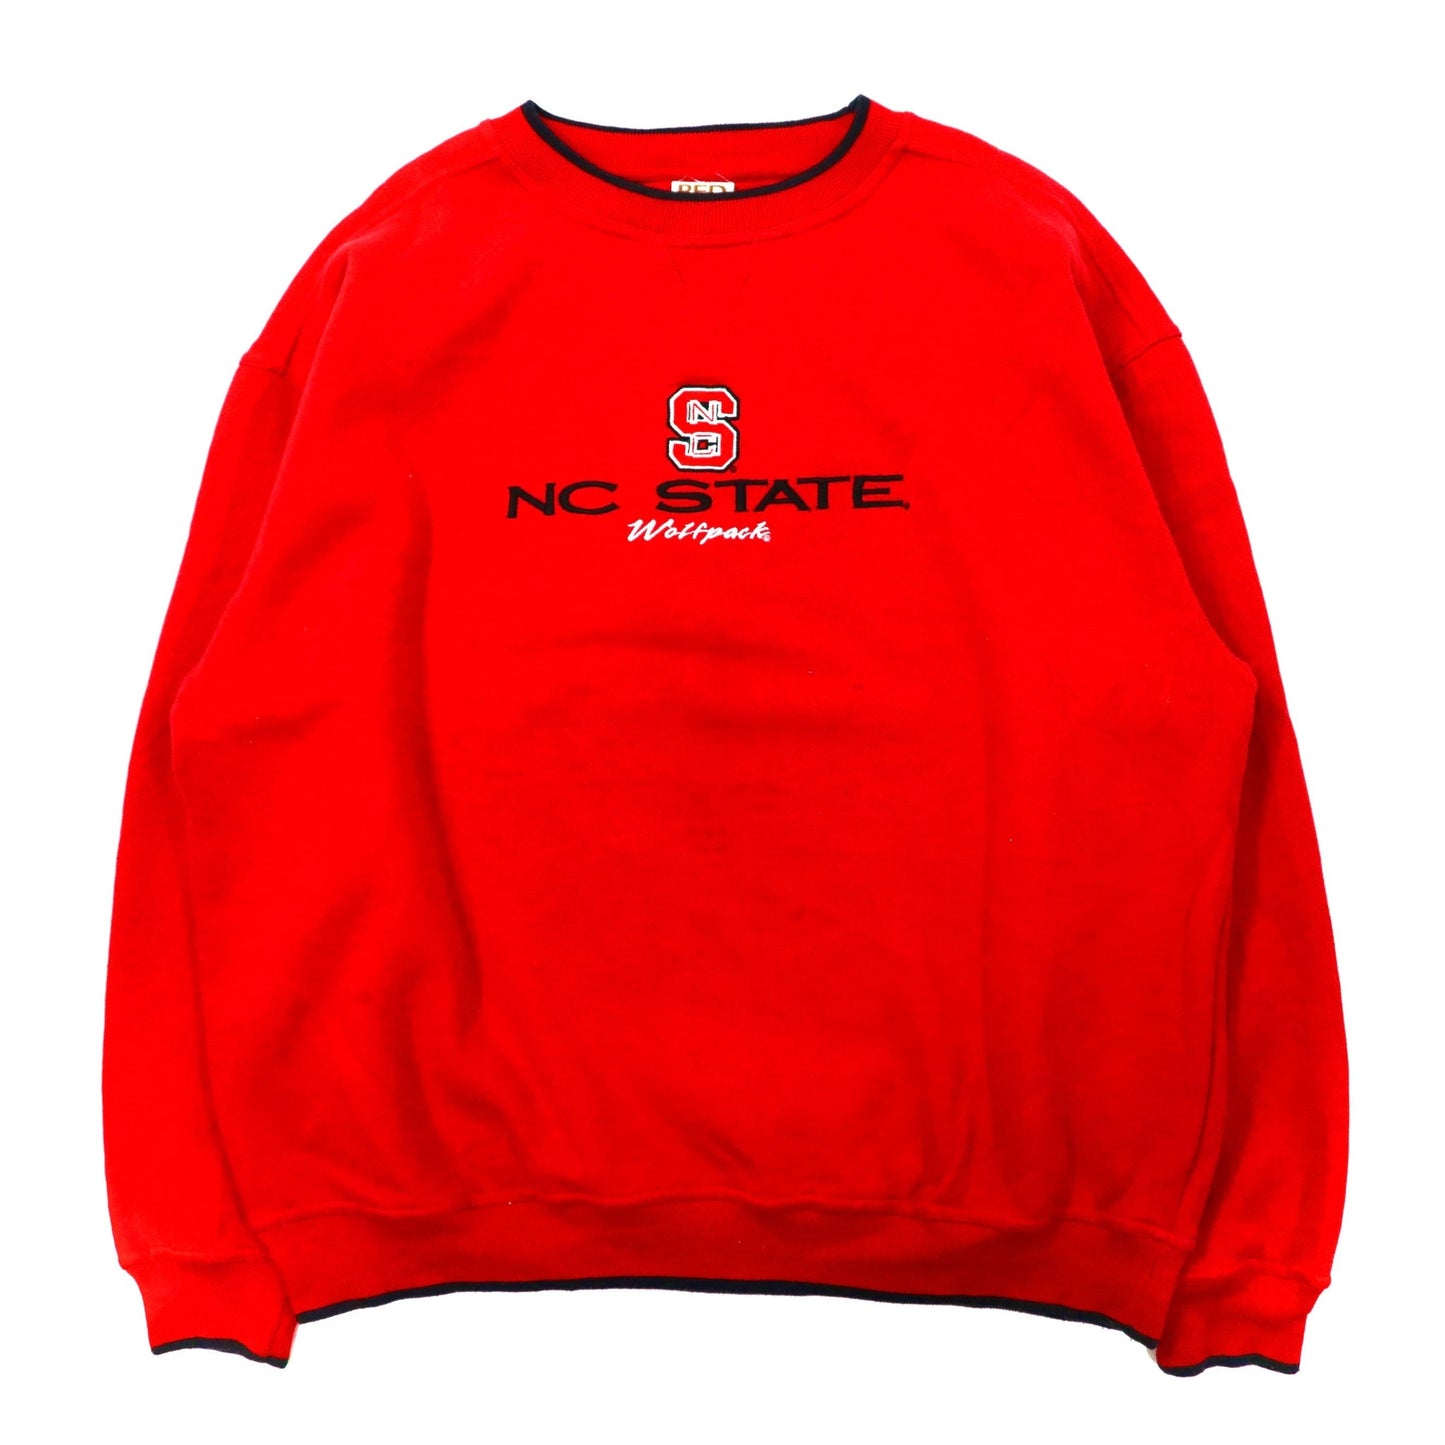 RED OAK ビッグサイズ スウェット XL レッド コットン 裏起毛 カレッジ フットボール NC STATE Wolfpack 90年代 モンゴル製-VINTAGE-古着